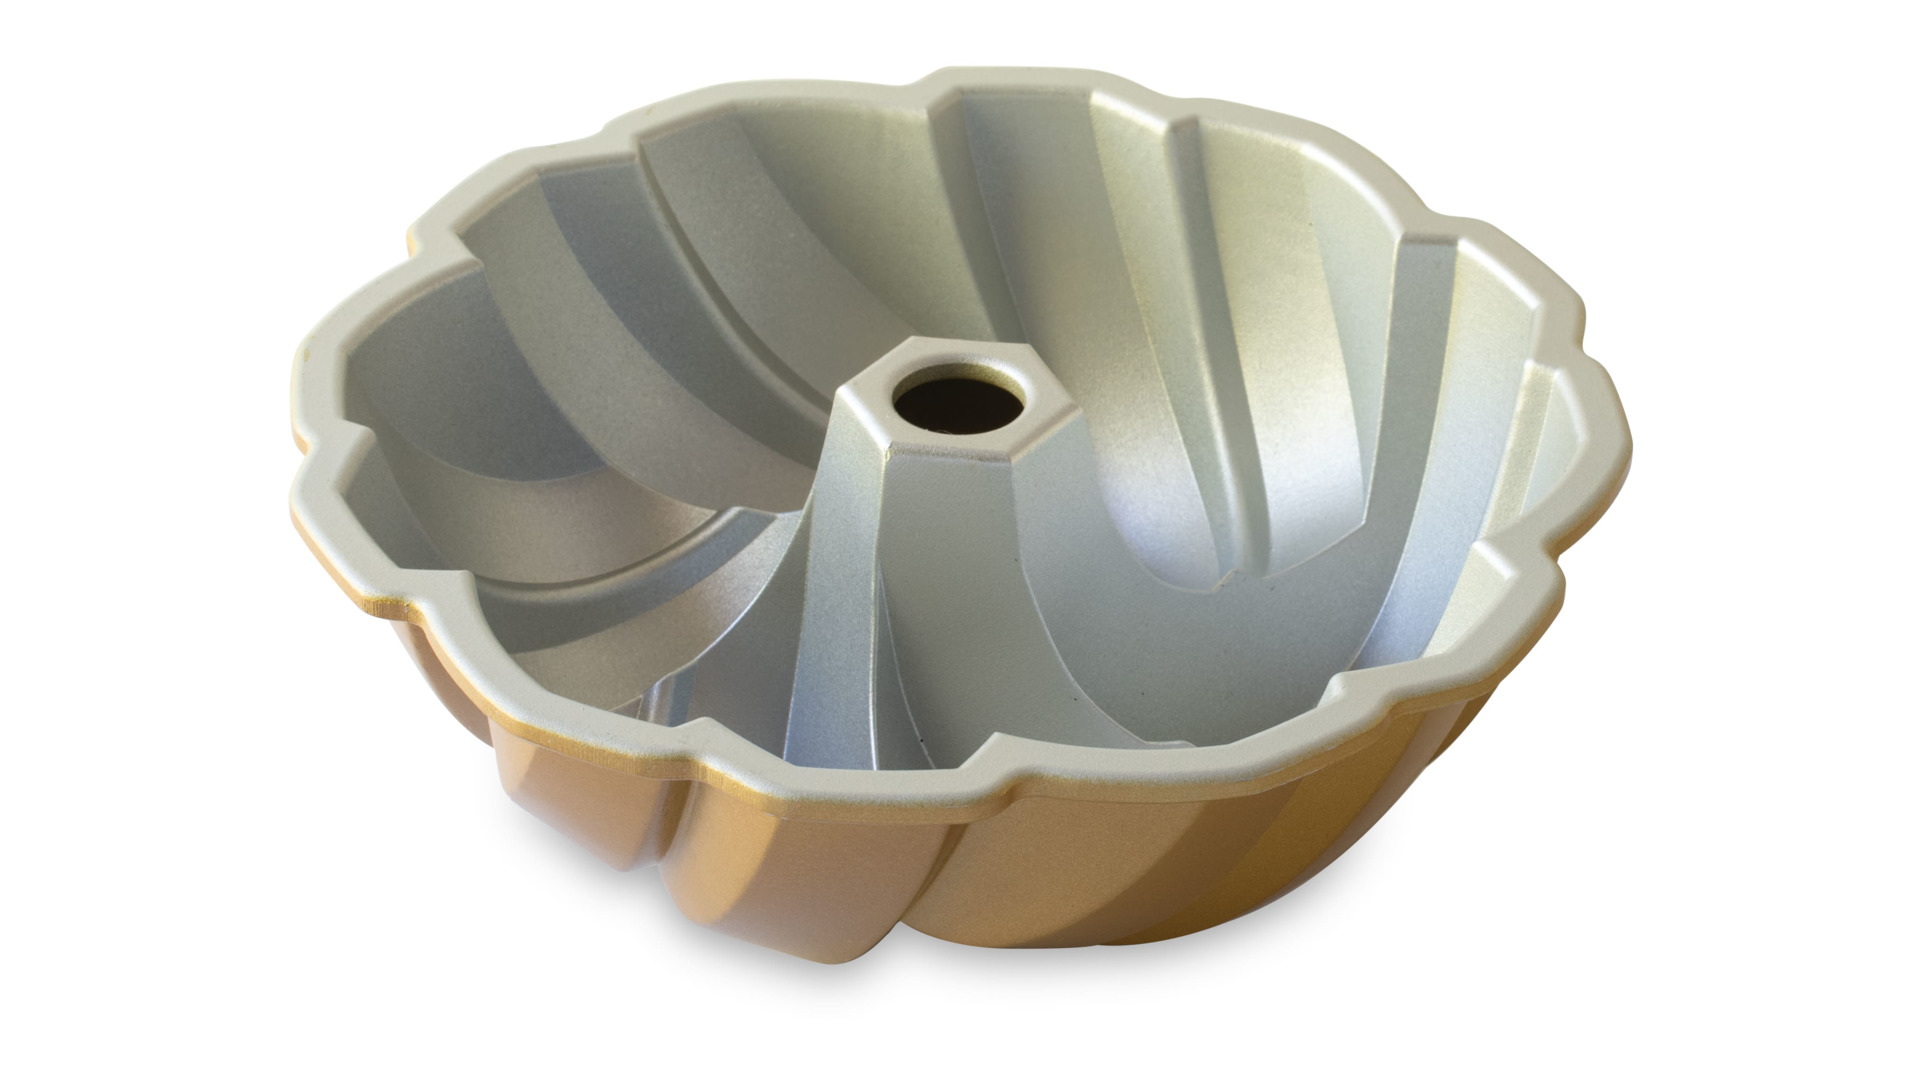 Форма для выпечки 3D Nordic Ware 75-й Юбилей 2,8 л, литой алюминий, золотая